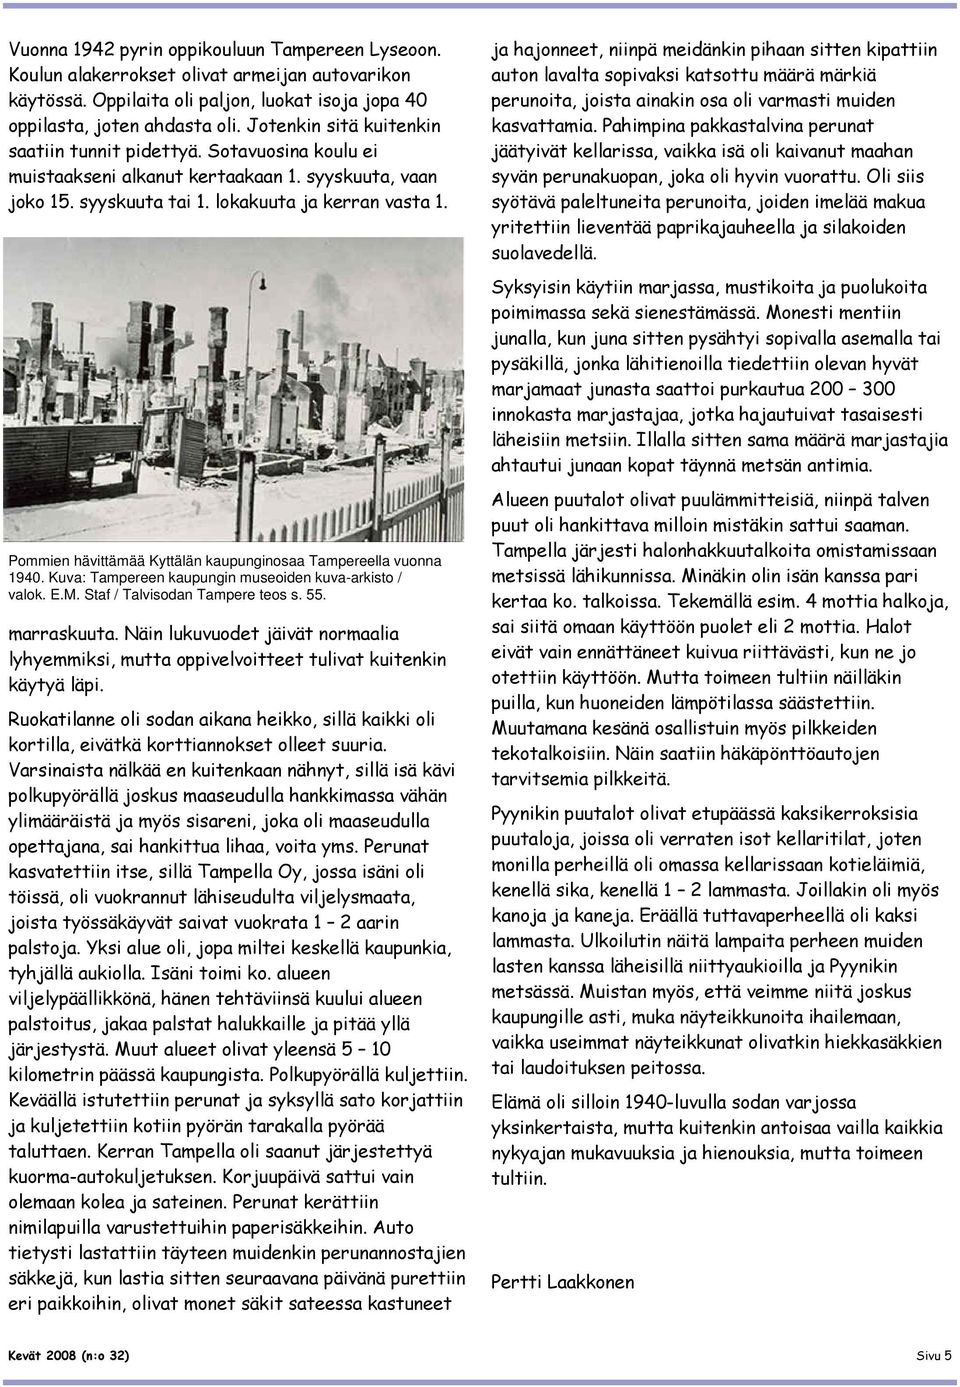 Pommien hävittämää Kyttälän kaupunginosaa Tampereella vuonna 1940. Kuva: Tampereen kaupungin museoiden kuva-arkisto / valok. E.M. Staf / Talvisodan Tampere teos s. 55. marraskuuta.